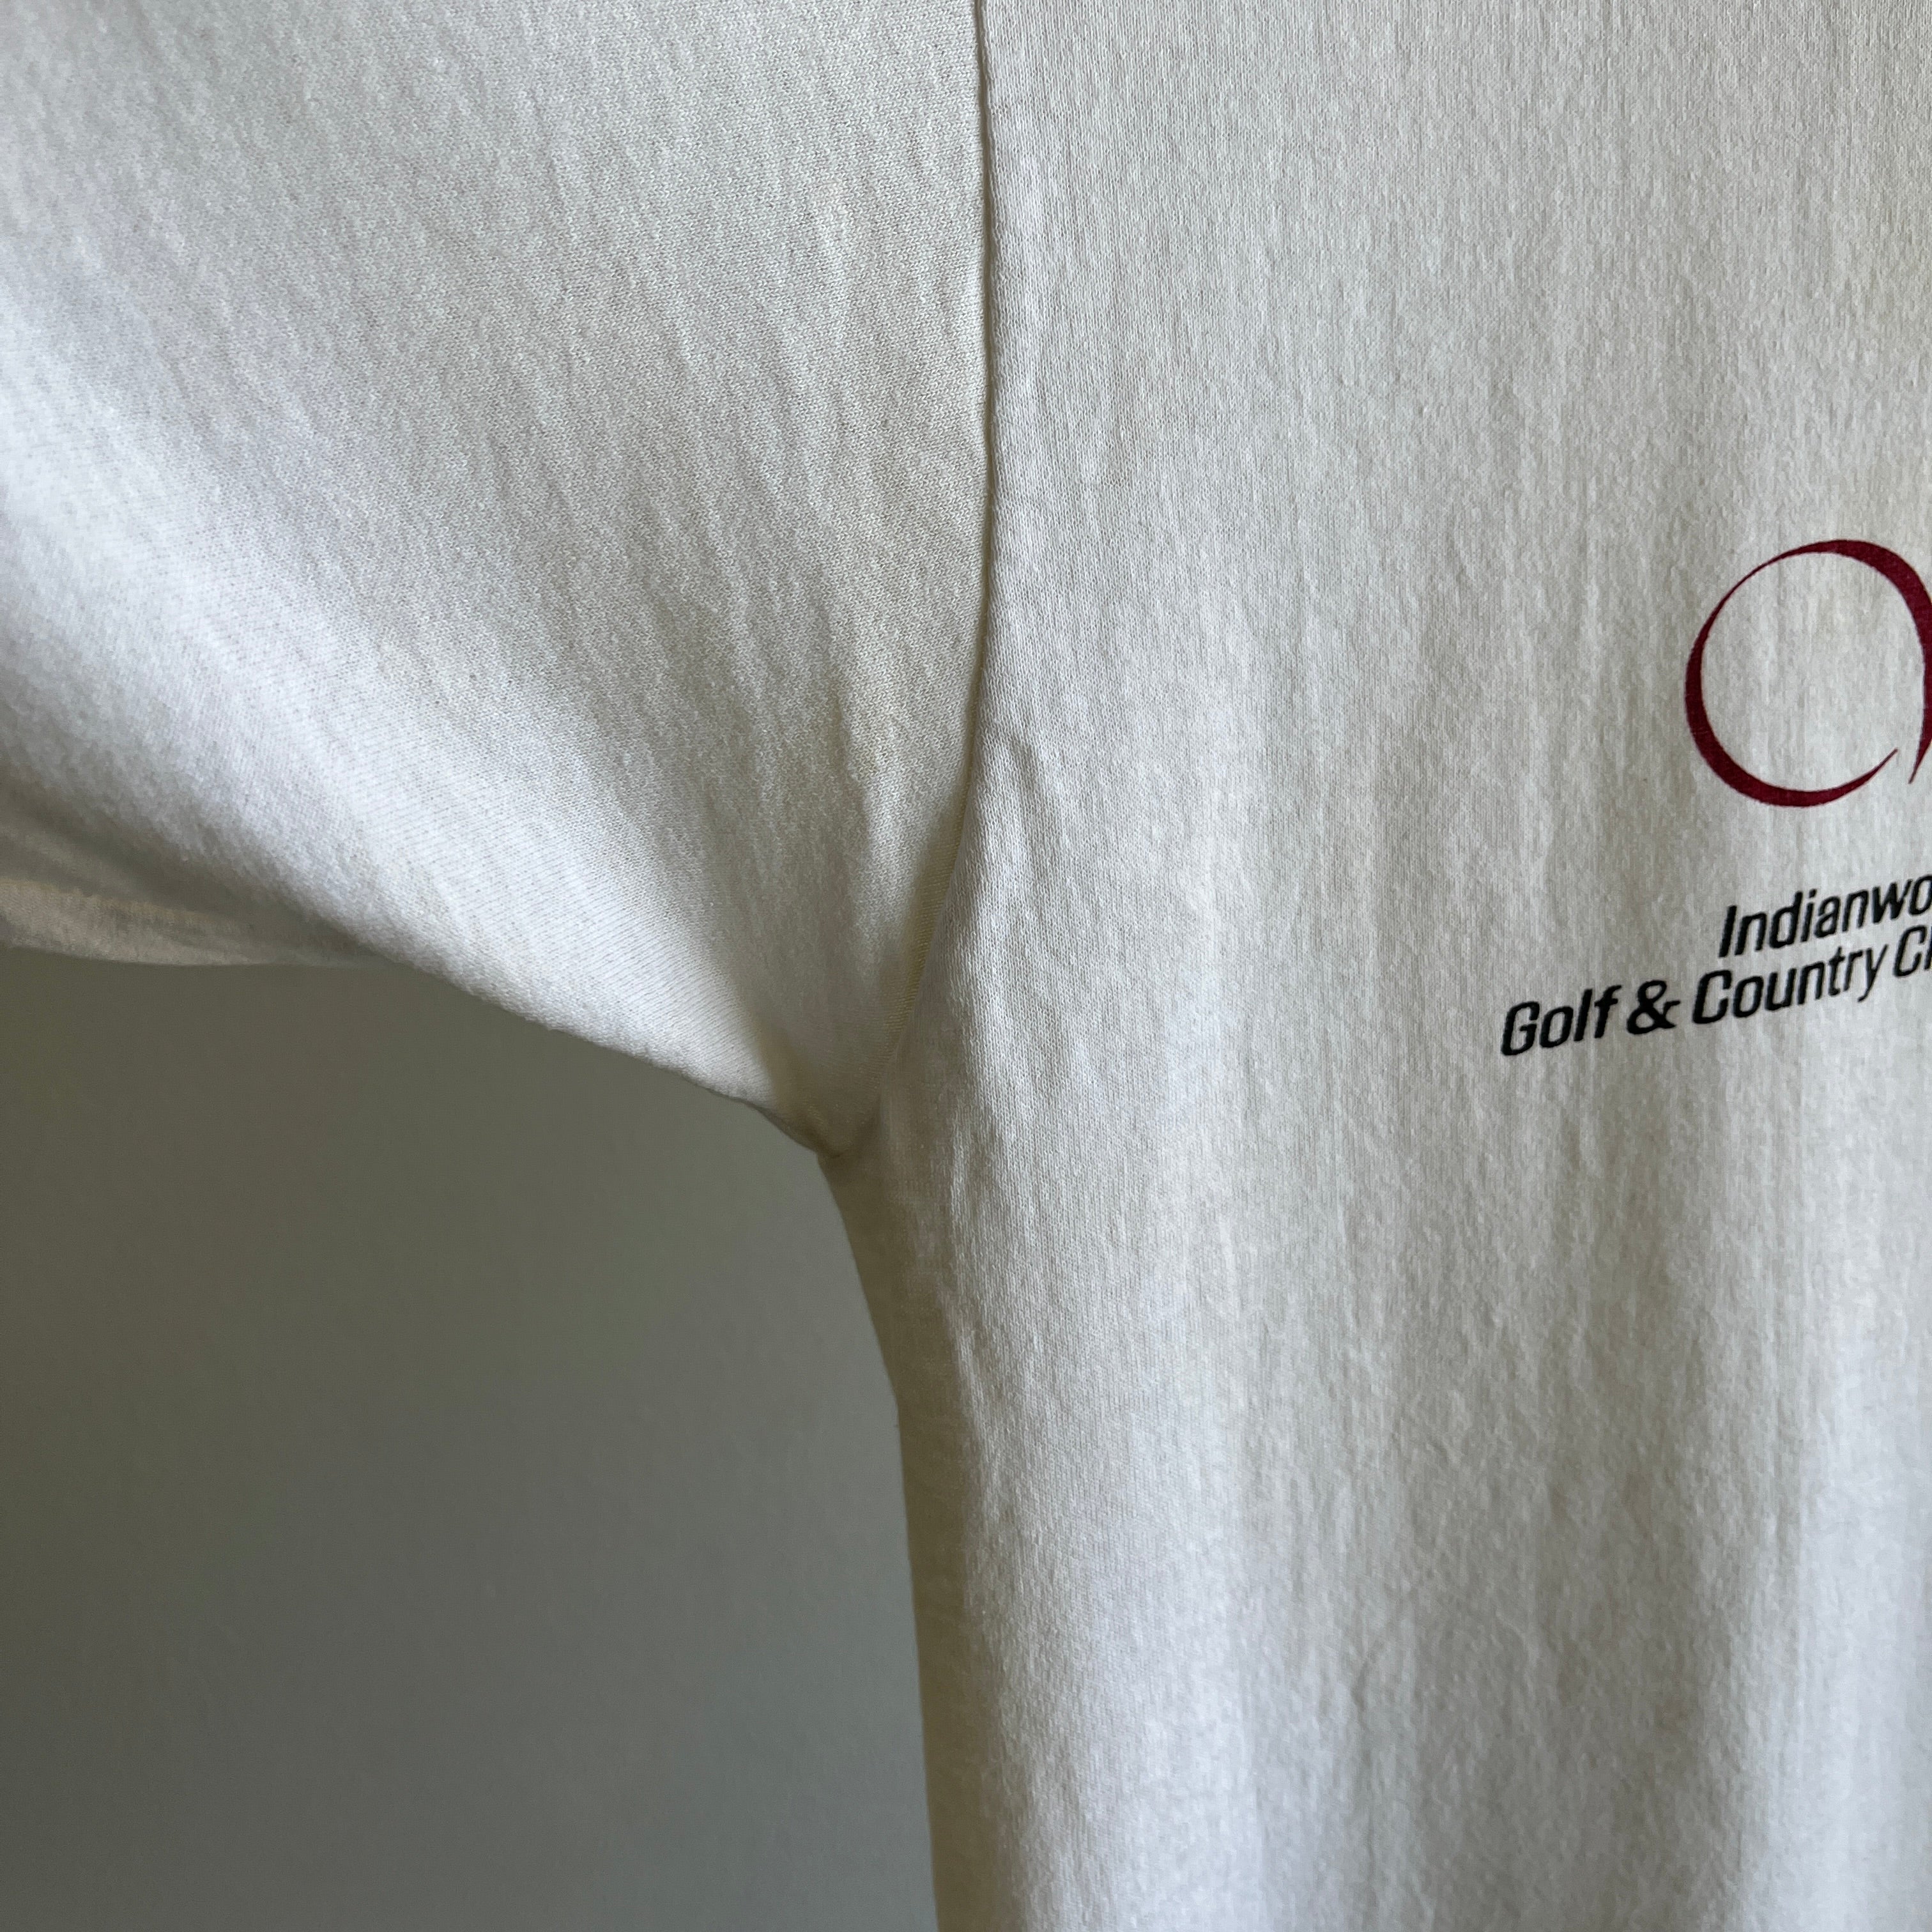 1989 U.S. Women's Open Golf T-Shirt